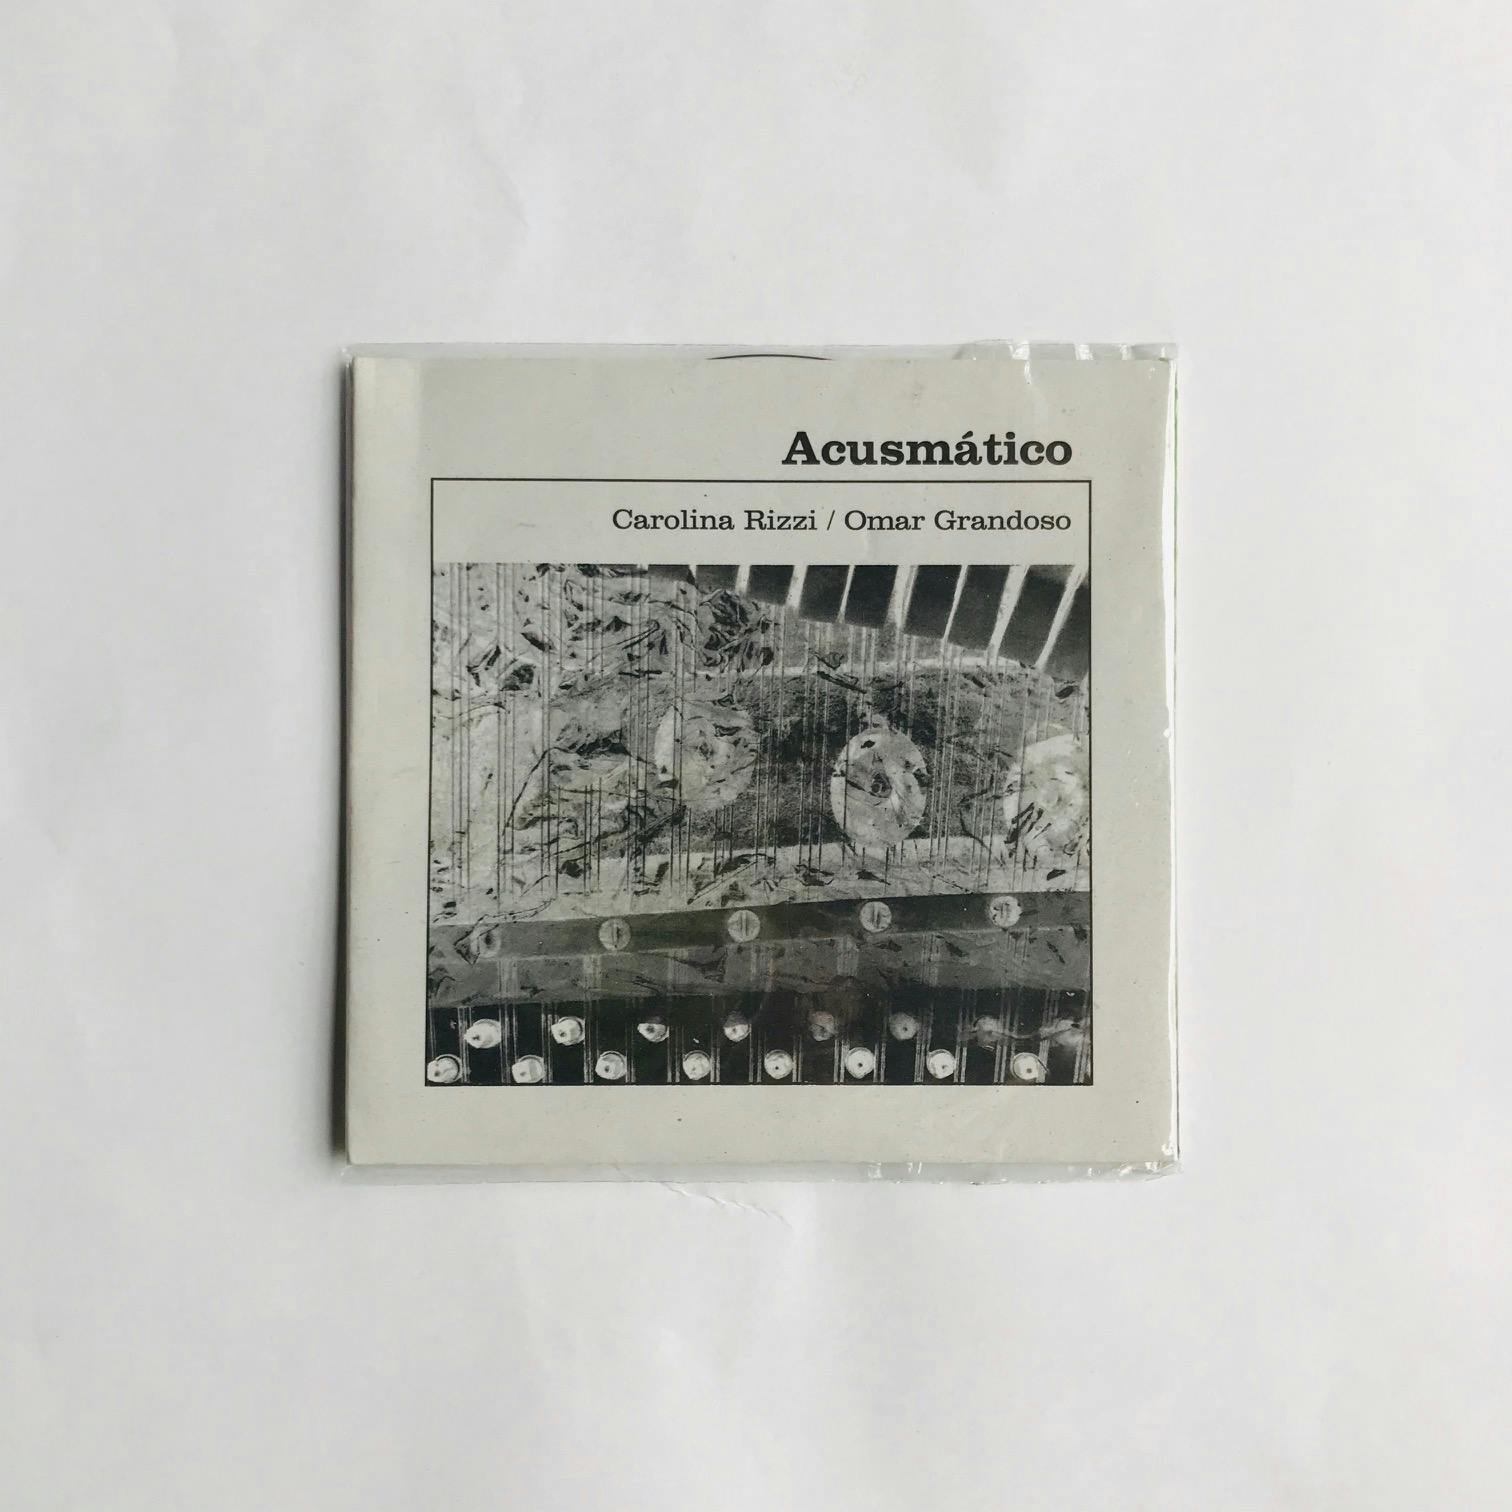 "ACUSMÁTICO", CD de C. Rizzi & O. Grandoso